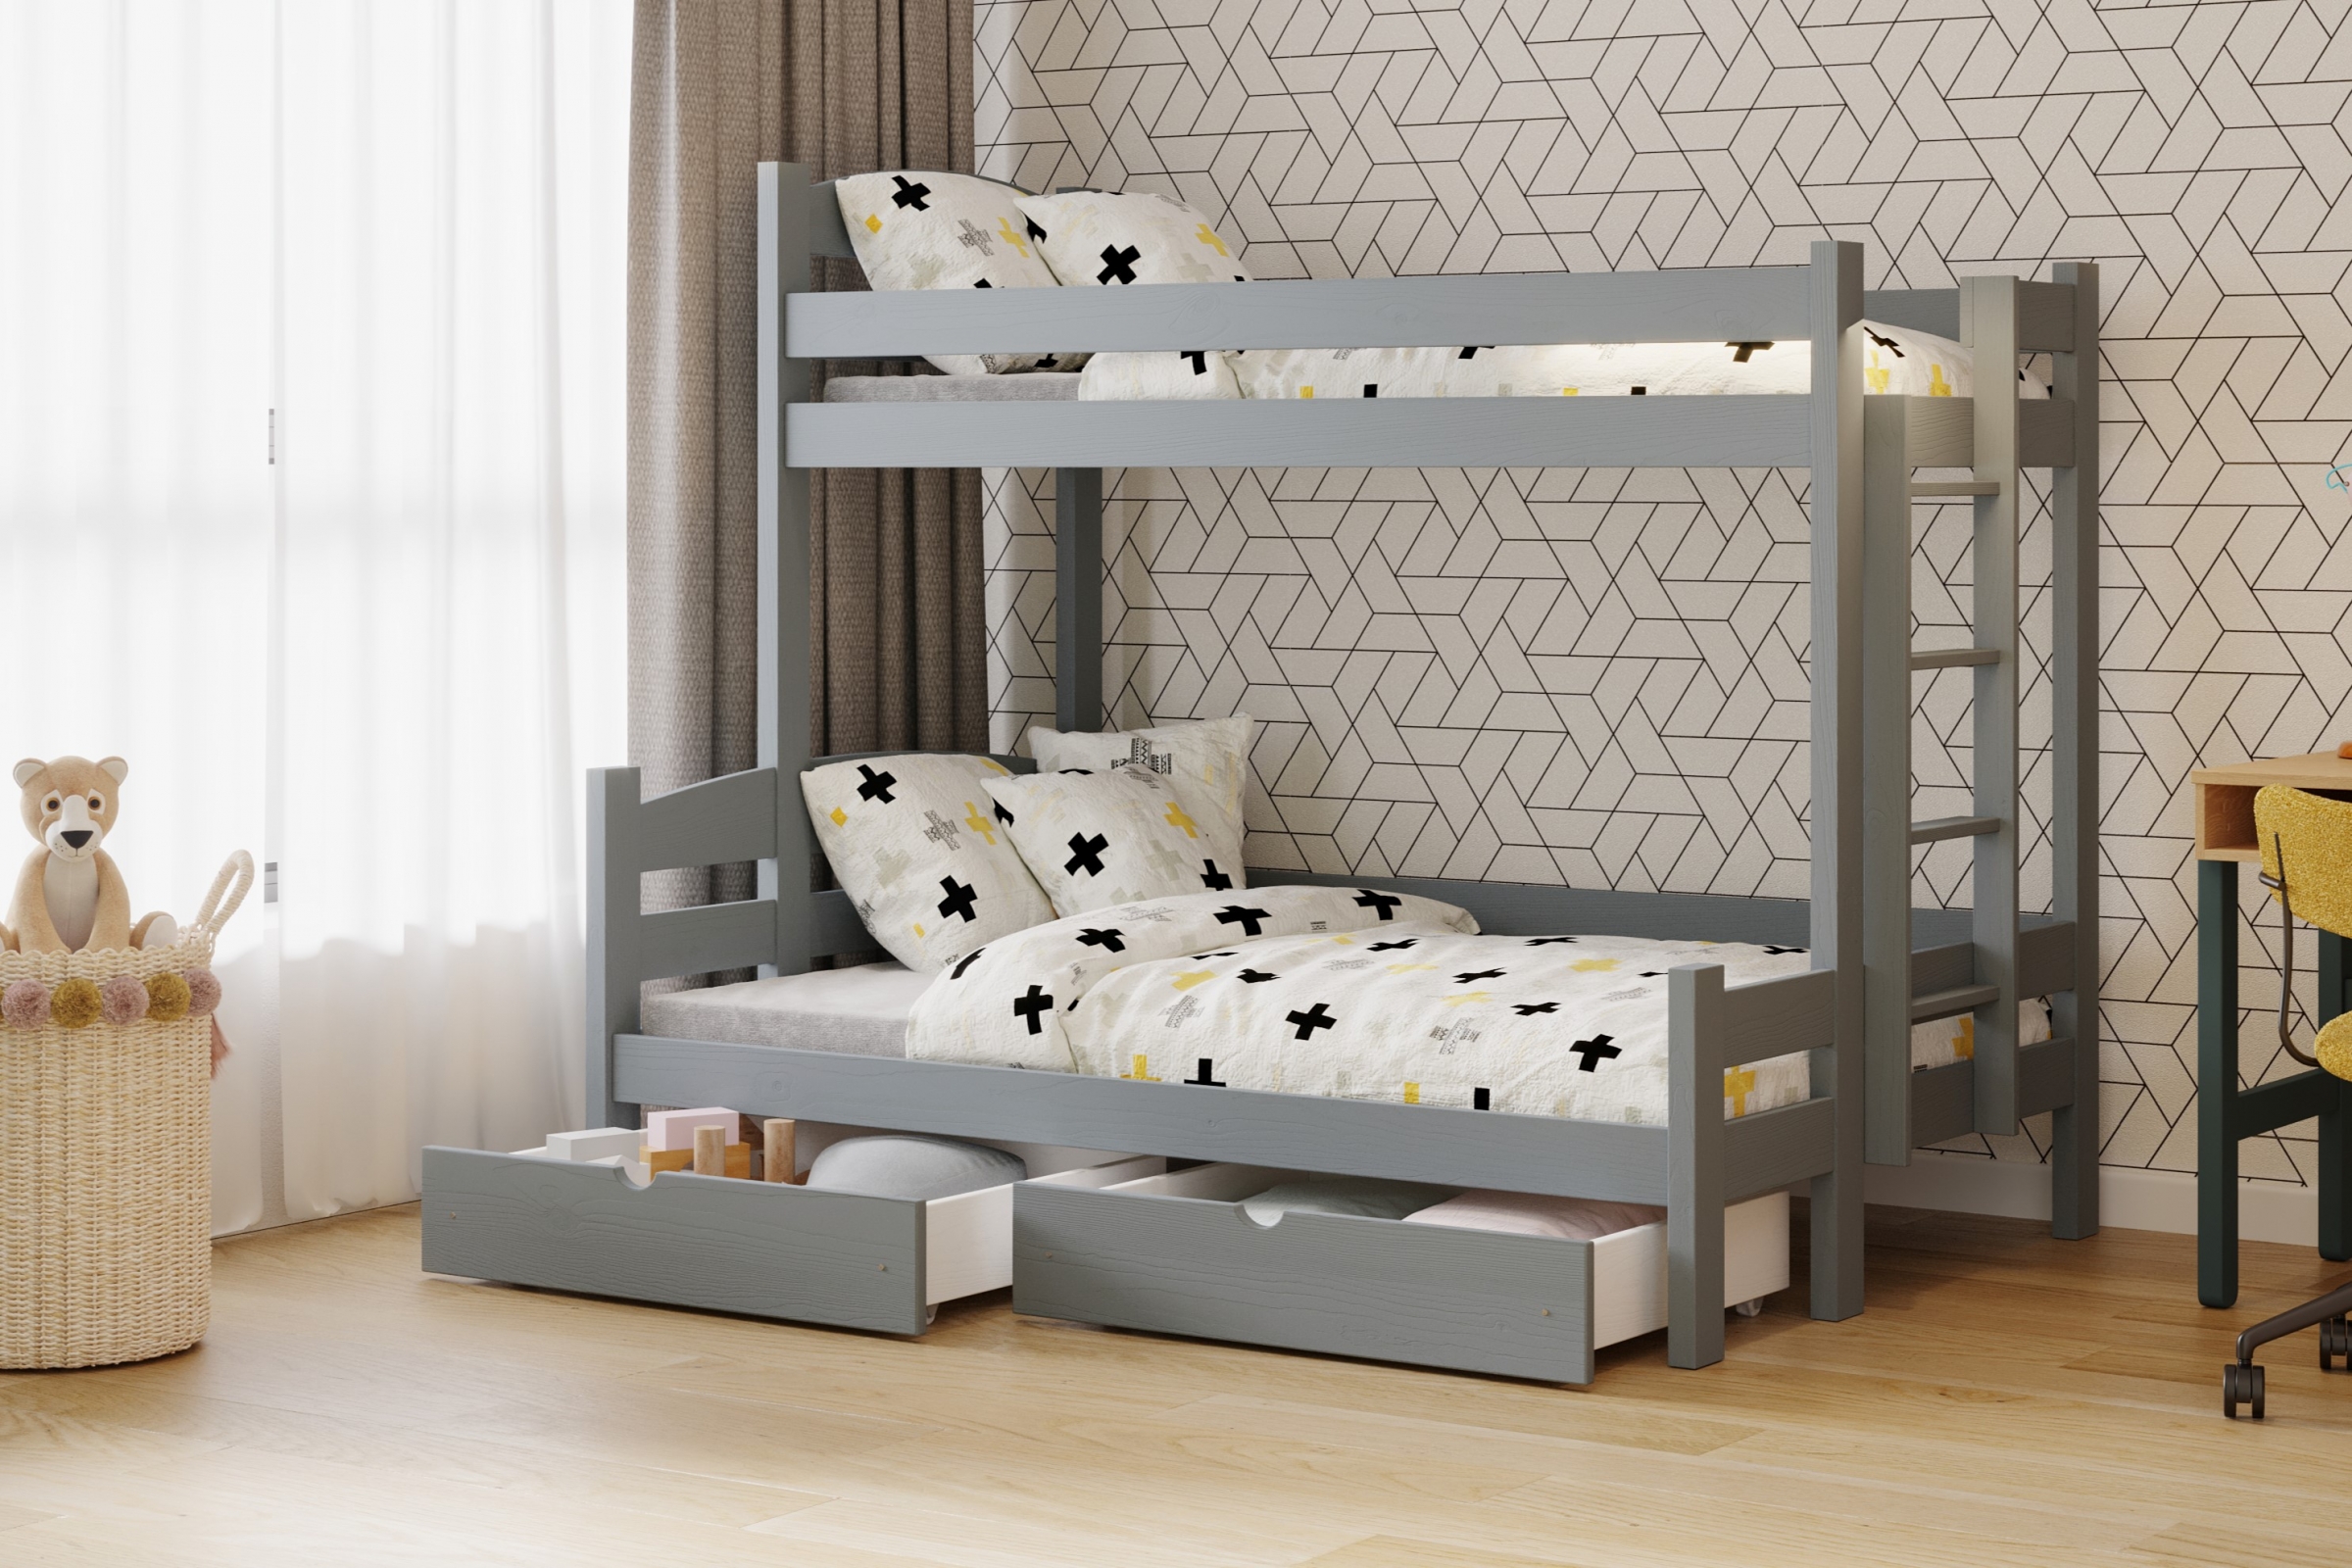 Lovic emeletes ágy, fiókokkal, bal oldali - 80x200 cm/120x200 cm - grafitszürke Emeletes ágy fiokokkal Lovic - grafitszürke - aranzacja